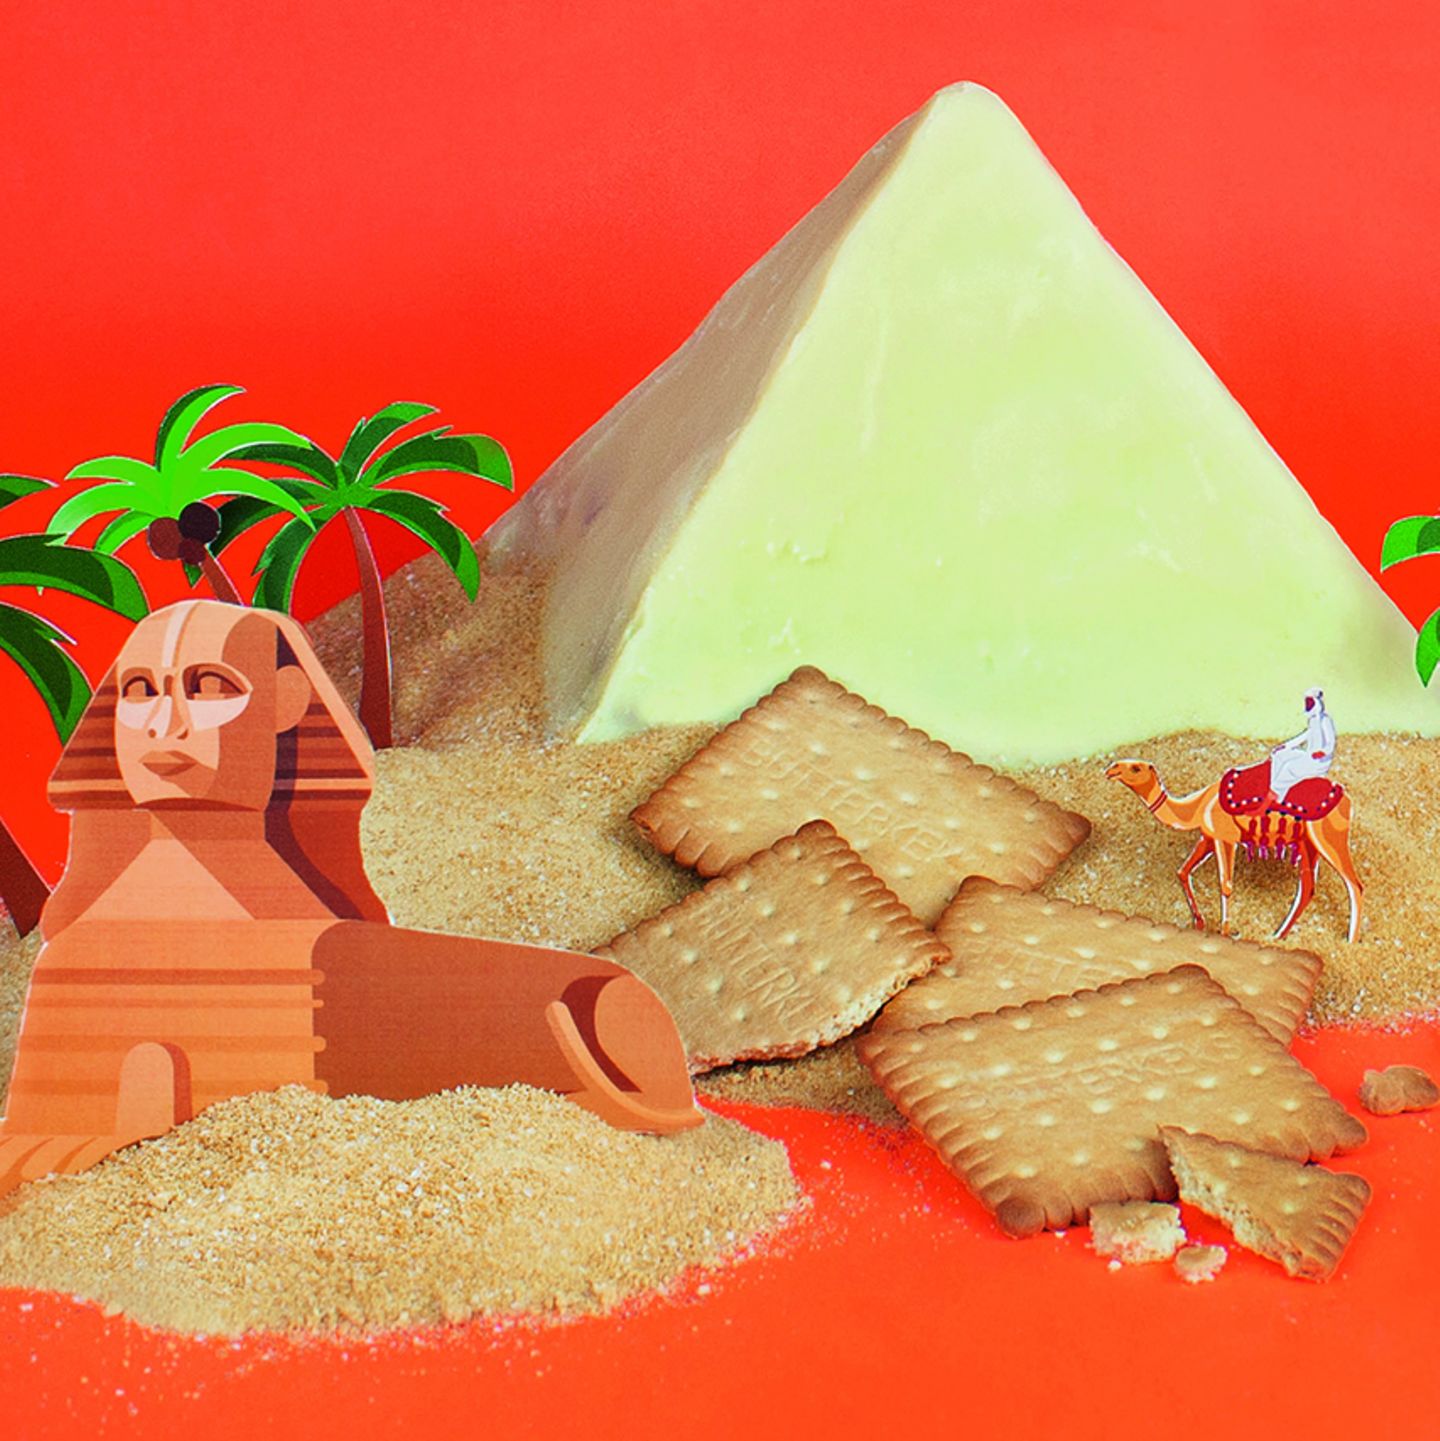 Ausstecher Ausstechform Keksausstecher Keks Ägypten Pharao Sphinx Horus Pyramide